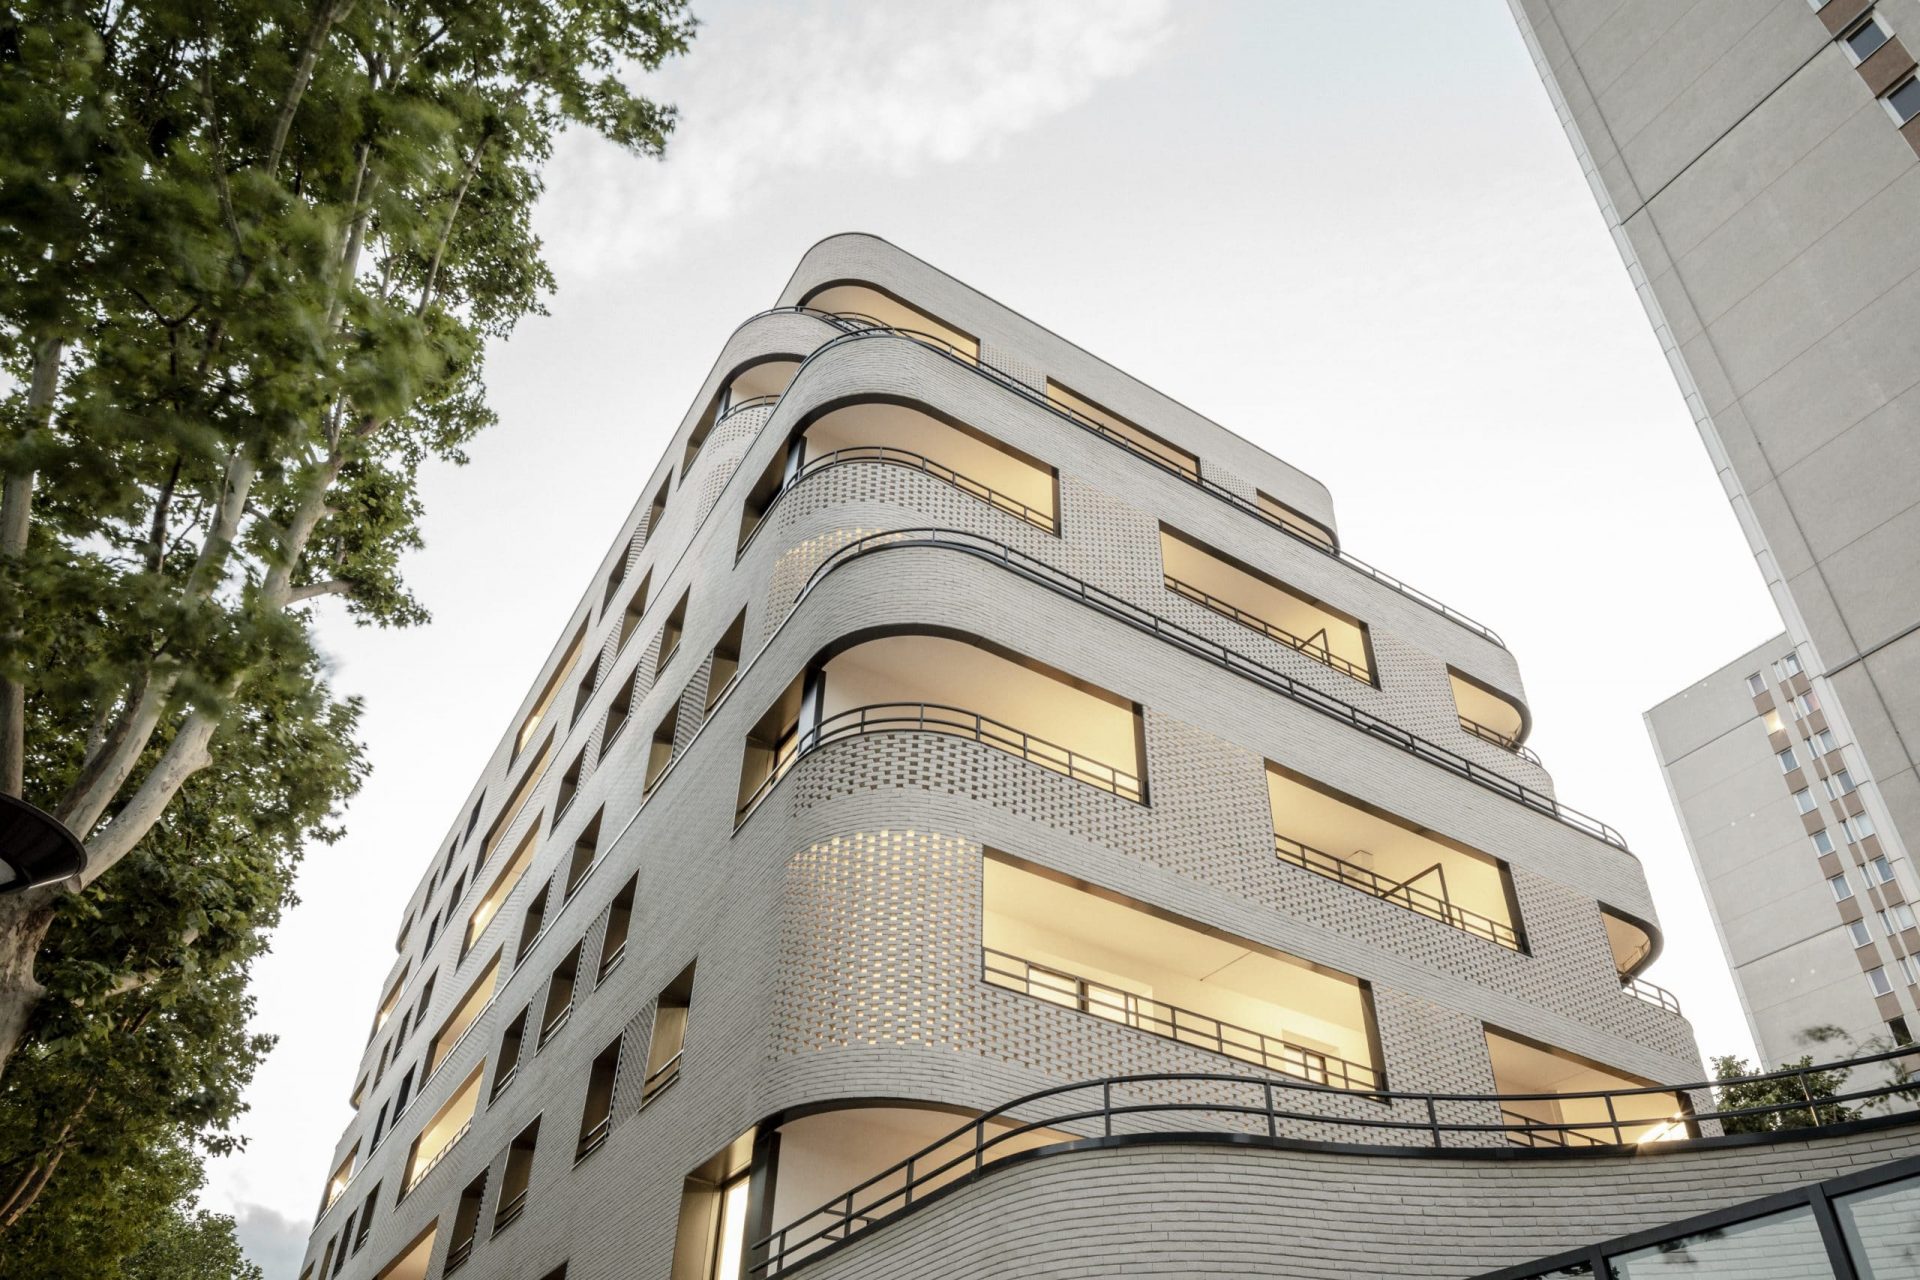 Une approche architecturale innovante à Paris (18ème) au service de la qualité de vie